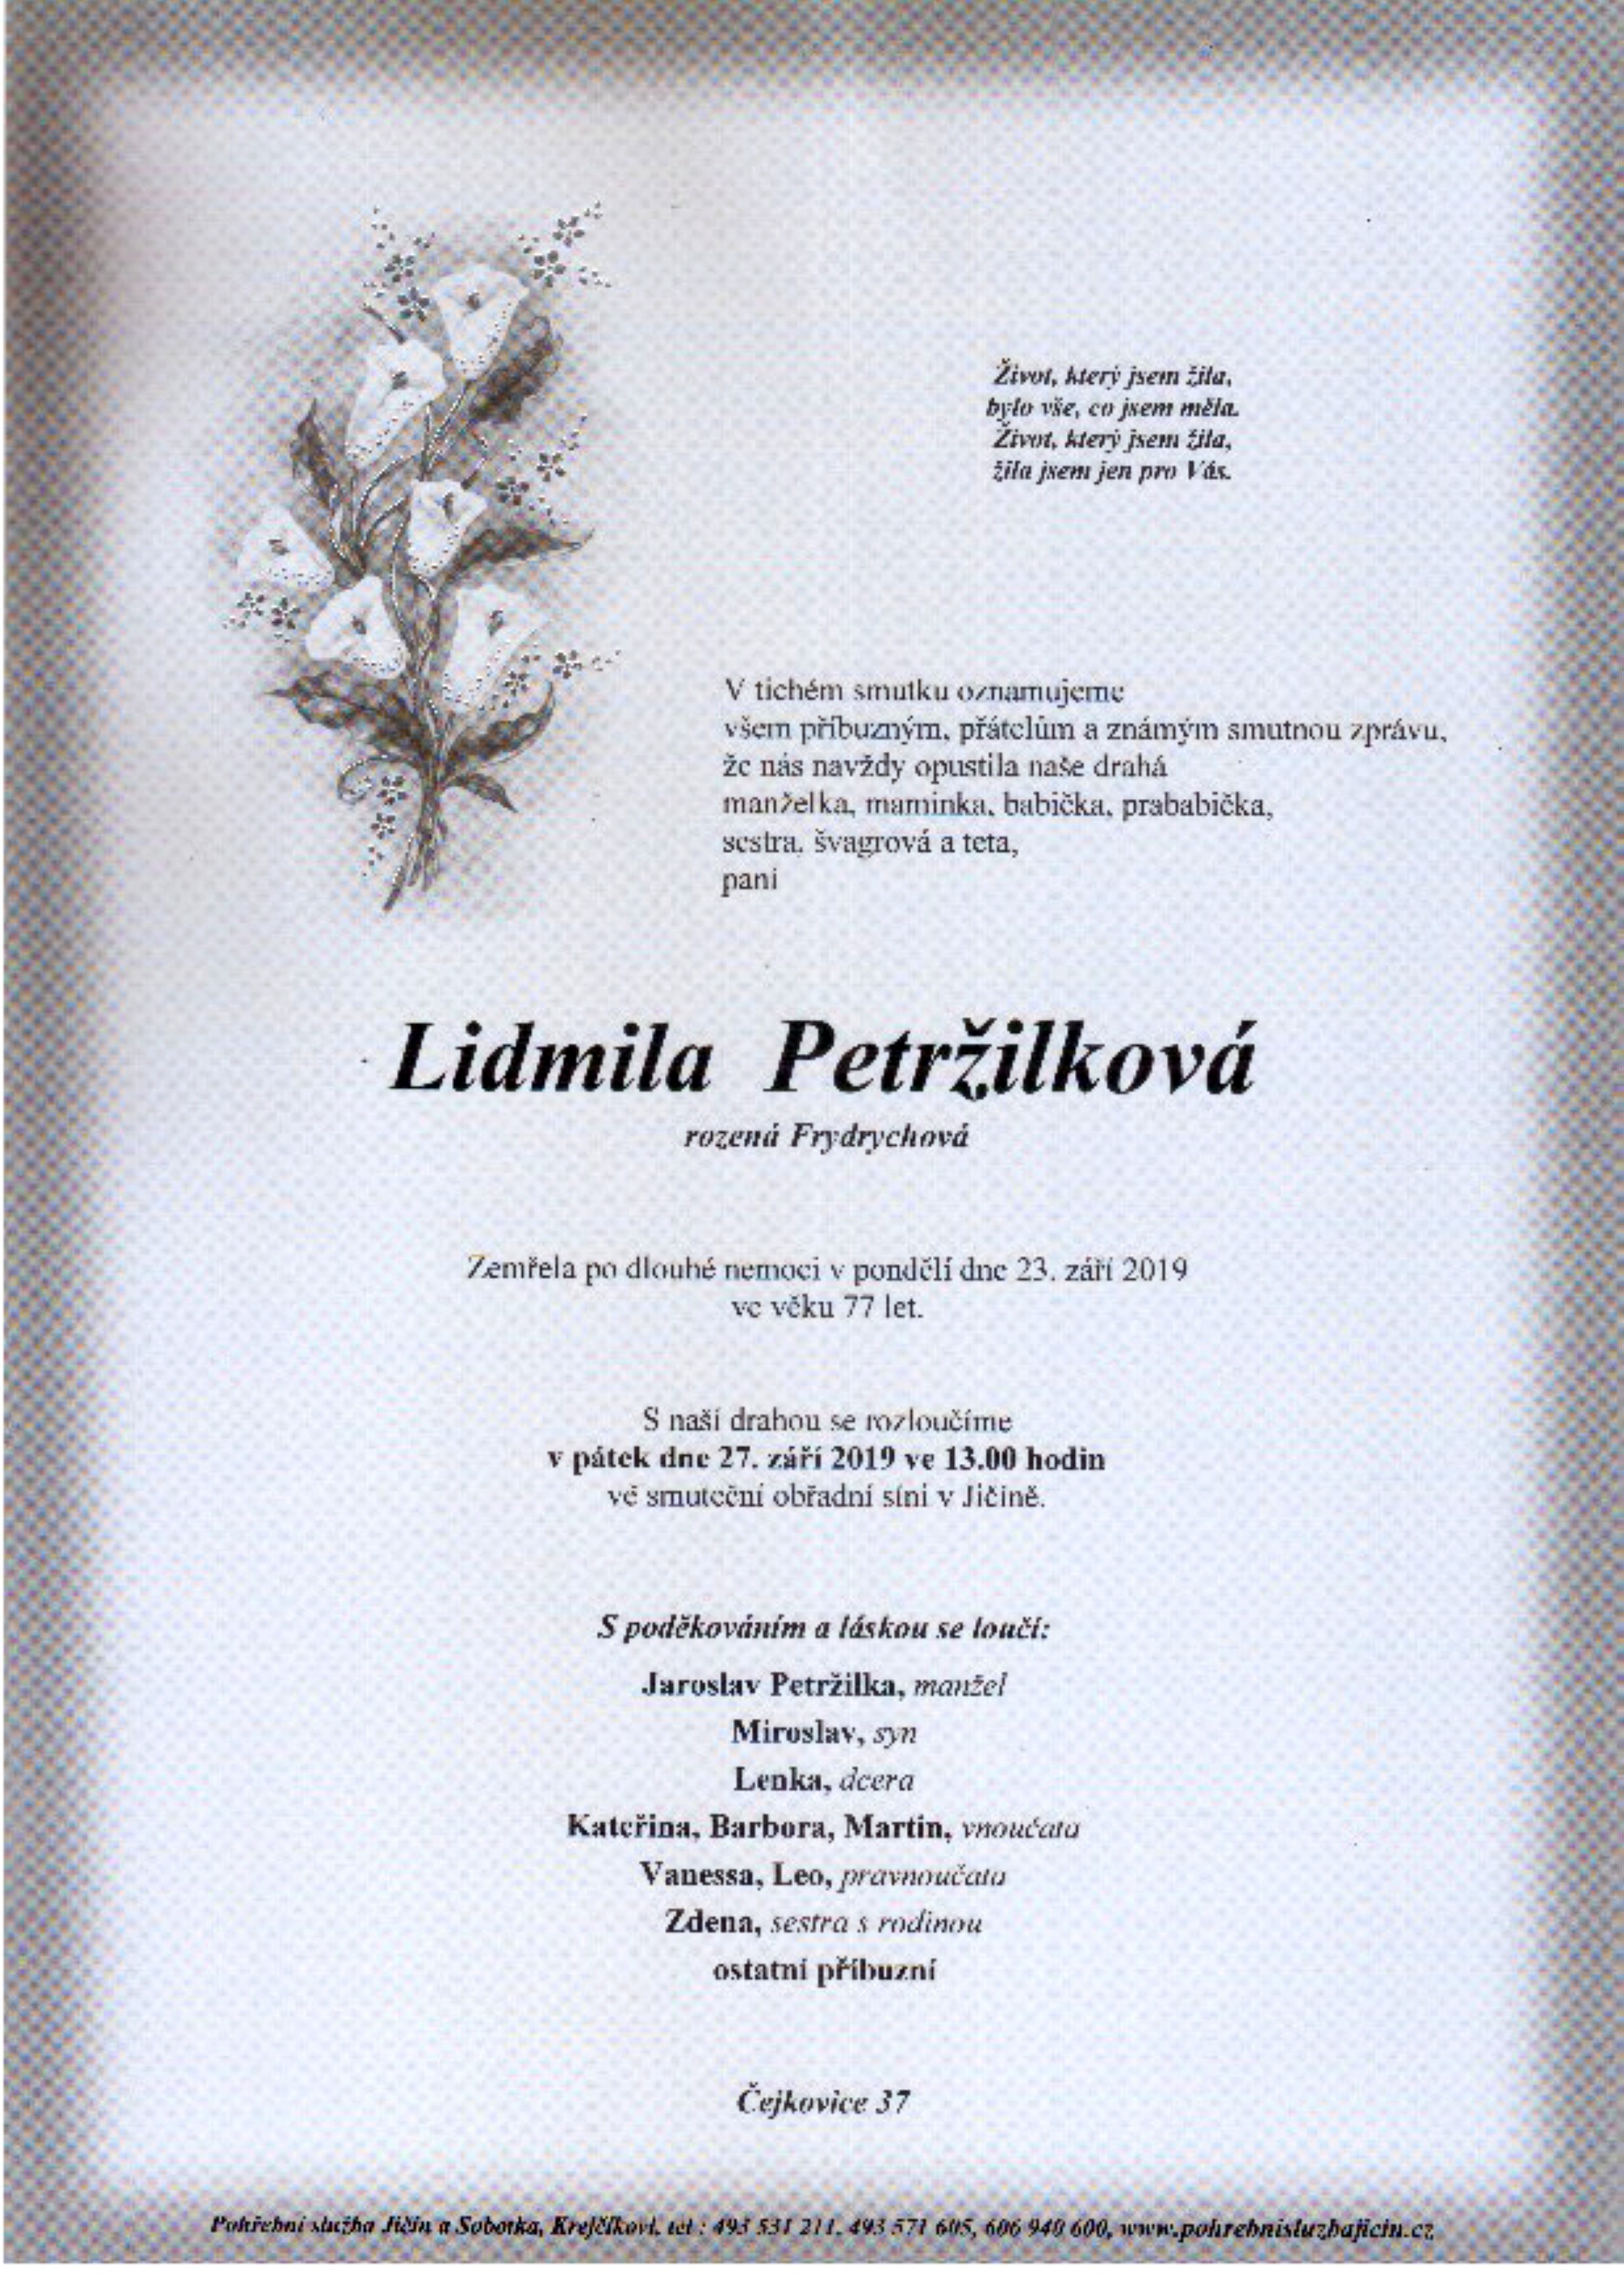 Lidmila Petržilková